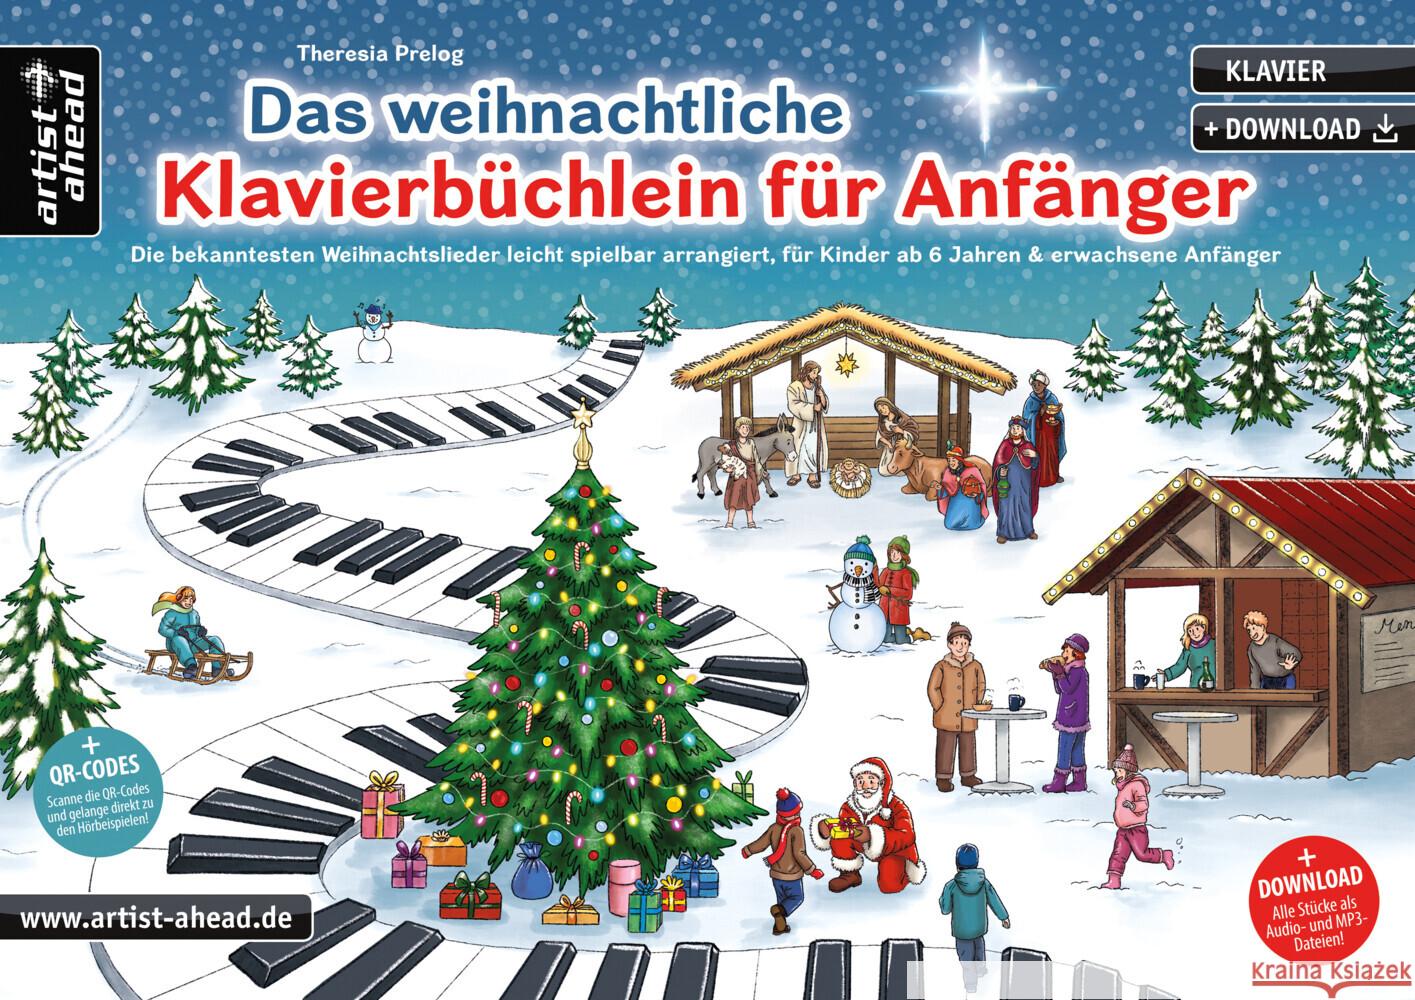 Das weihnachtliche Klavierbüchlein für Anfänger Prelog, Theresia 9783866422100 artist ahead - książka